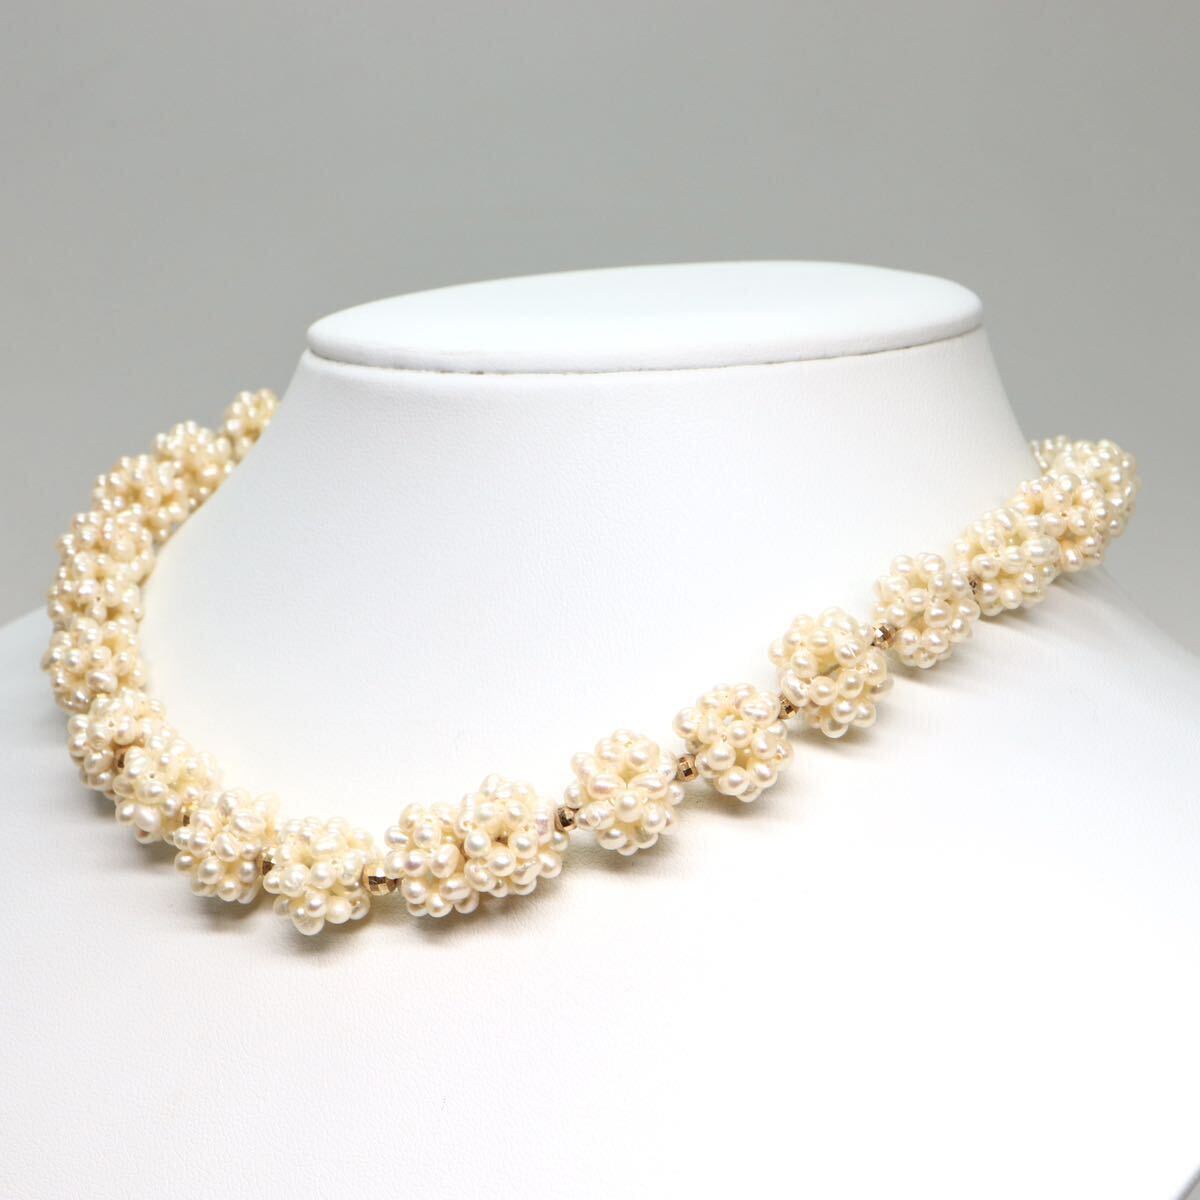 《本真珠ネックレス》M 37.0g 約39cm pearl necklace ジュエリー jewelry DA0/DA0